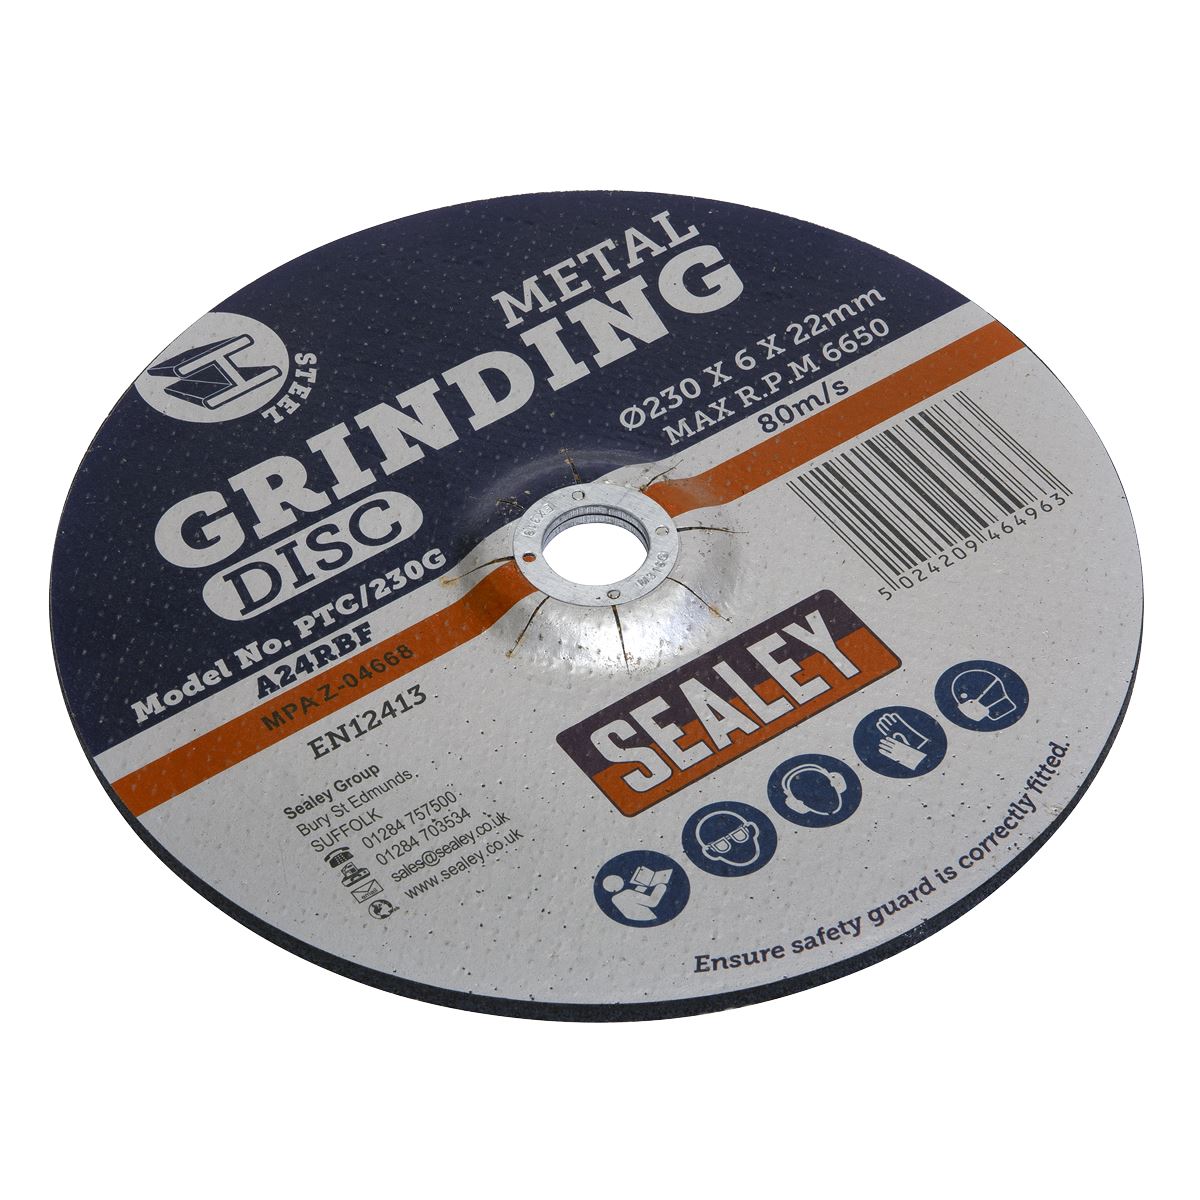 Sealey Grinding Disc Ø230 x 6mm Ø22mm Bore